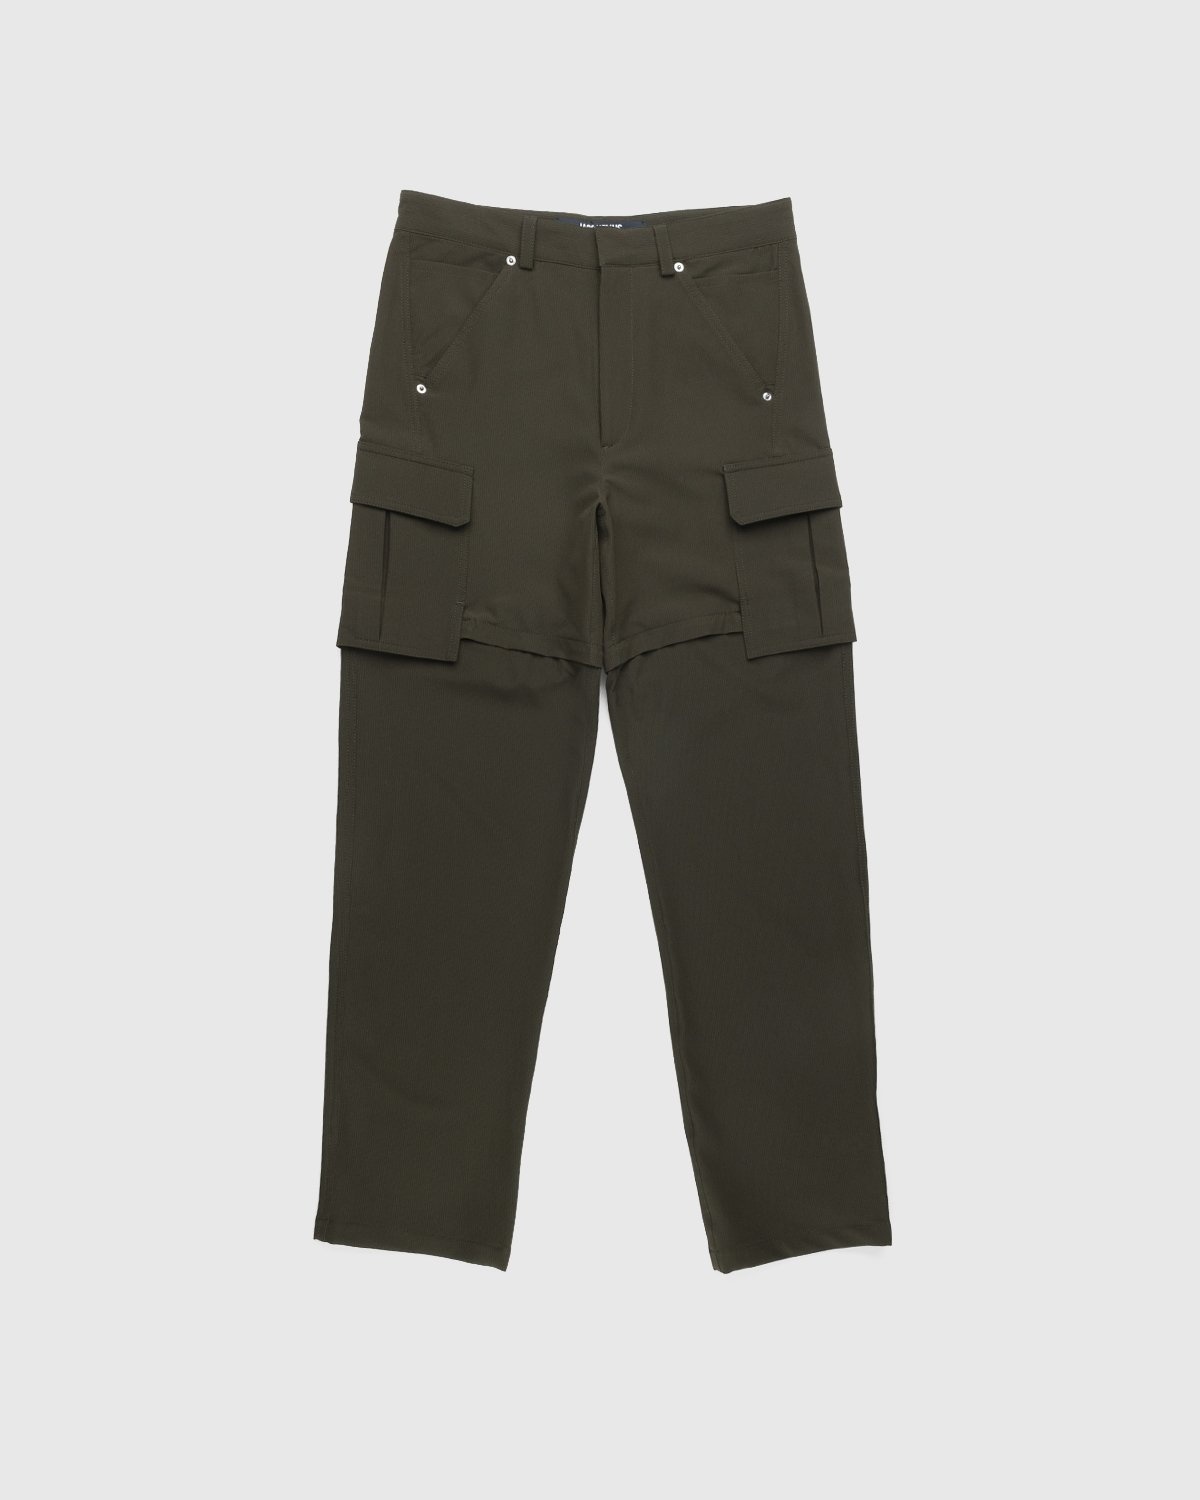 JACQUEMUS – Le Pantalon Peche Dark Khaki - Trousers - Green - Image 1